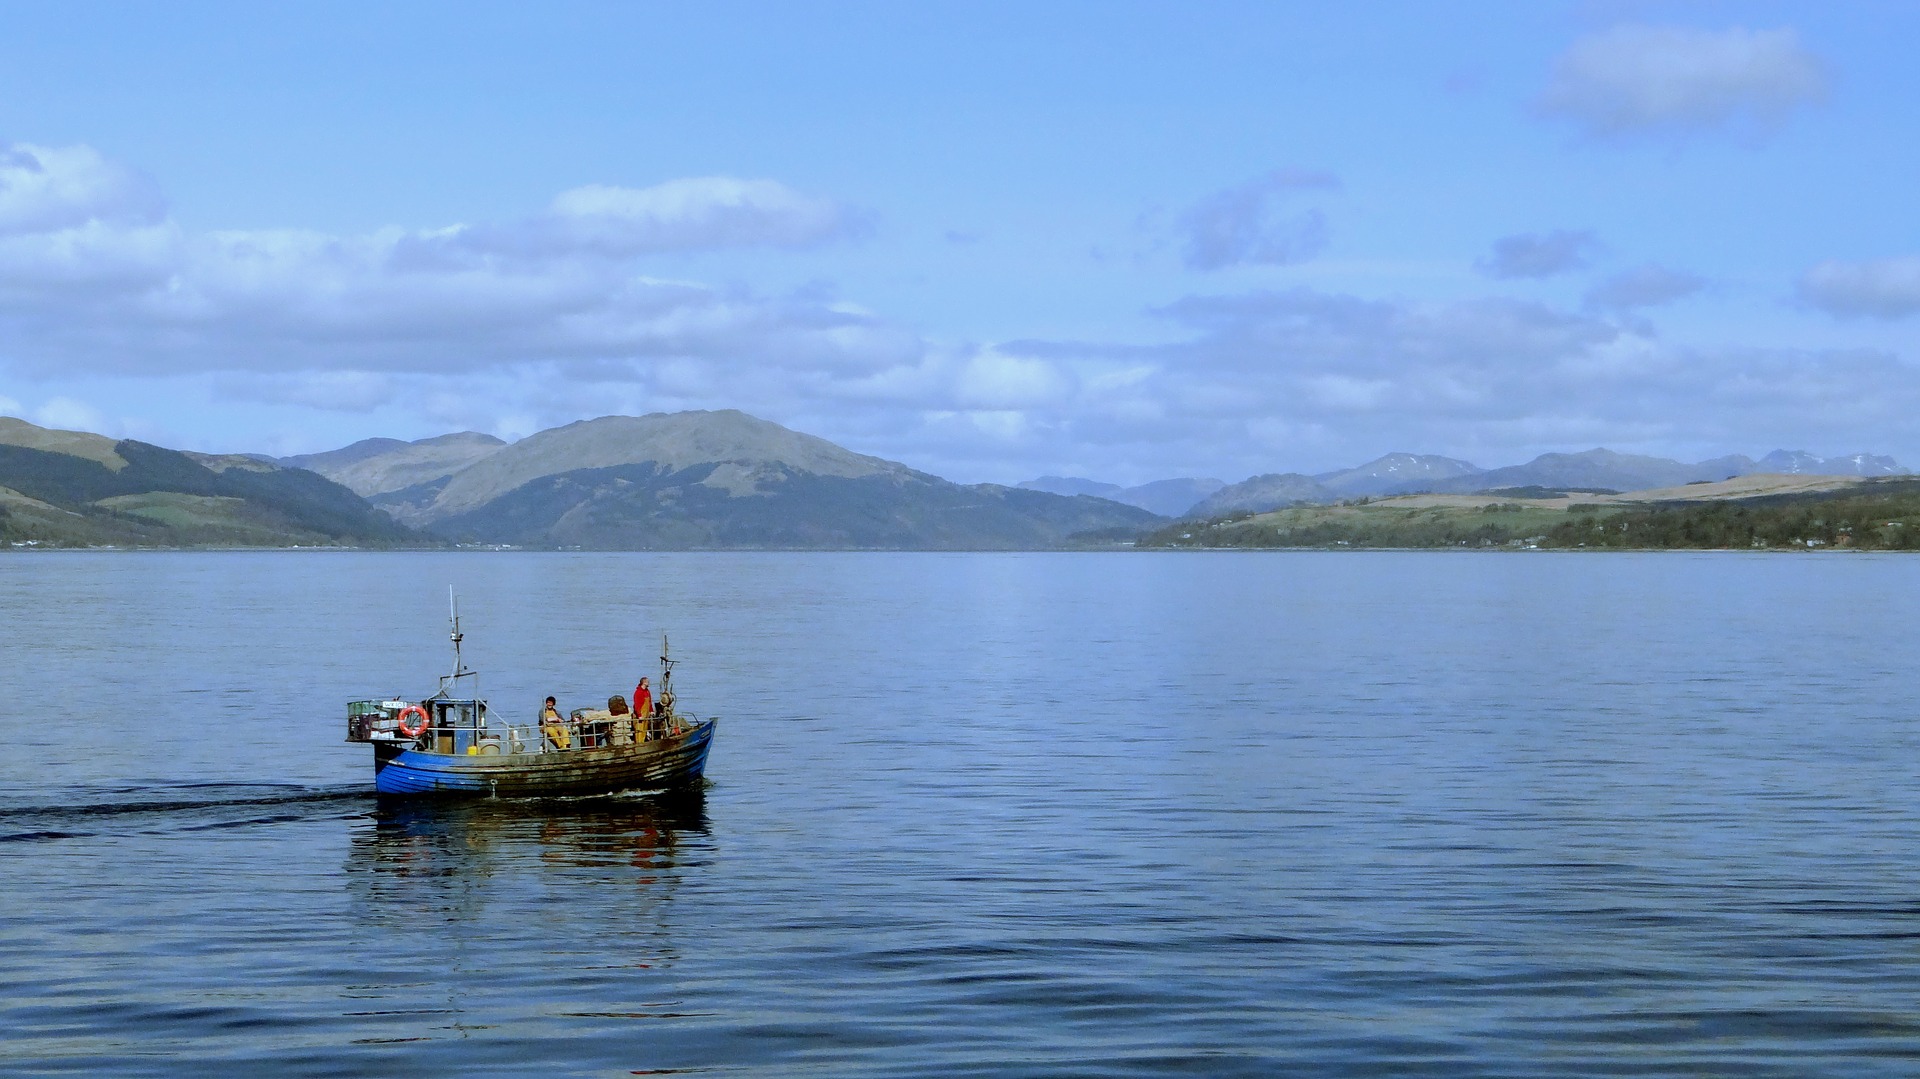 A fishing boat on Loch Linnhe